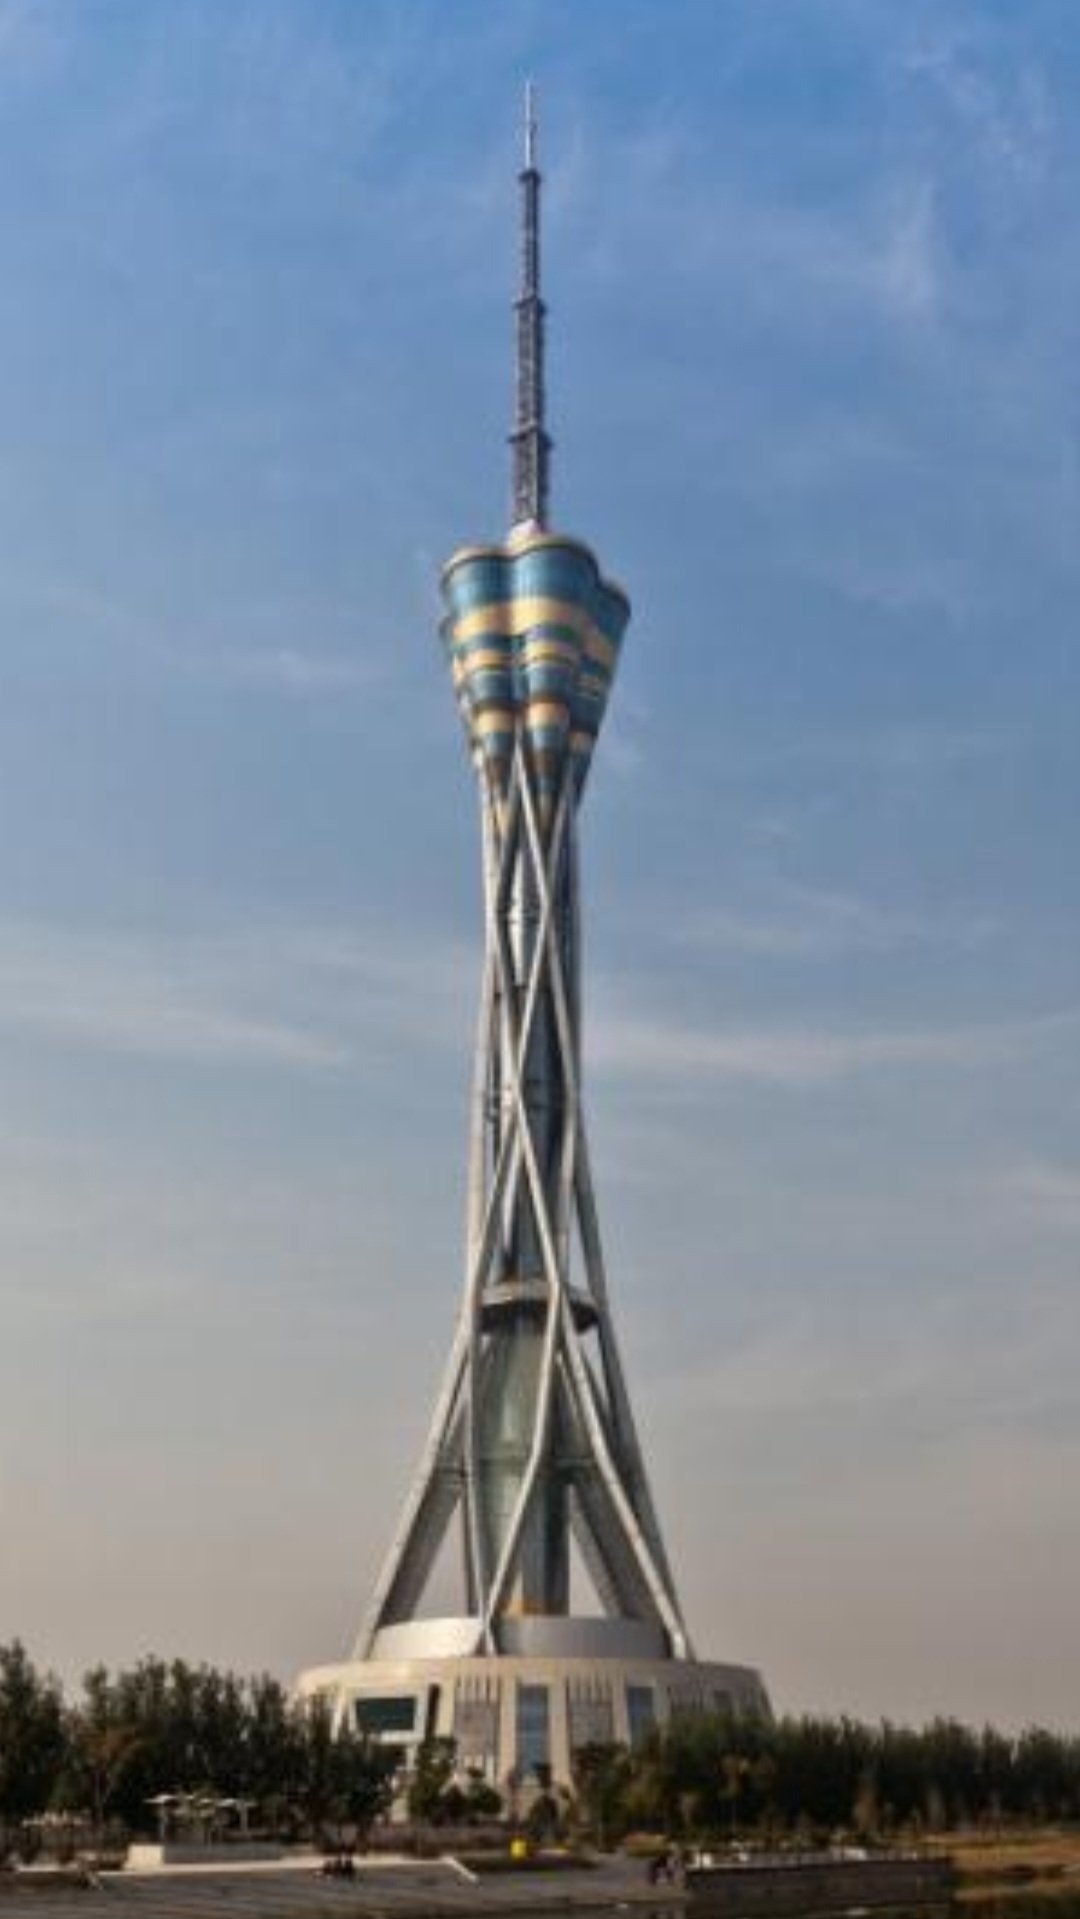 Henan Province Radio e Television Tower - 388 metros - China - Inaugurada em 2011, em Zhengzhou, a torre de telecomunicações conta com vista panorâmica e chama a atenção por sua construção de ferro que lembra caules de árvores.  Reprodução: Flipar